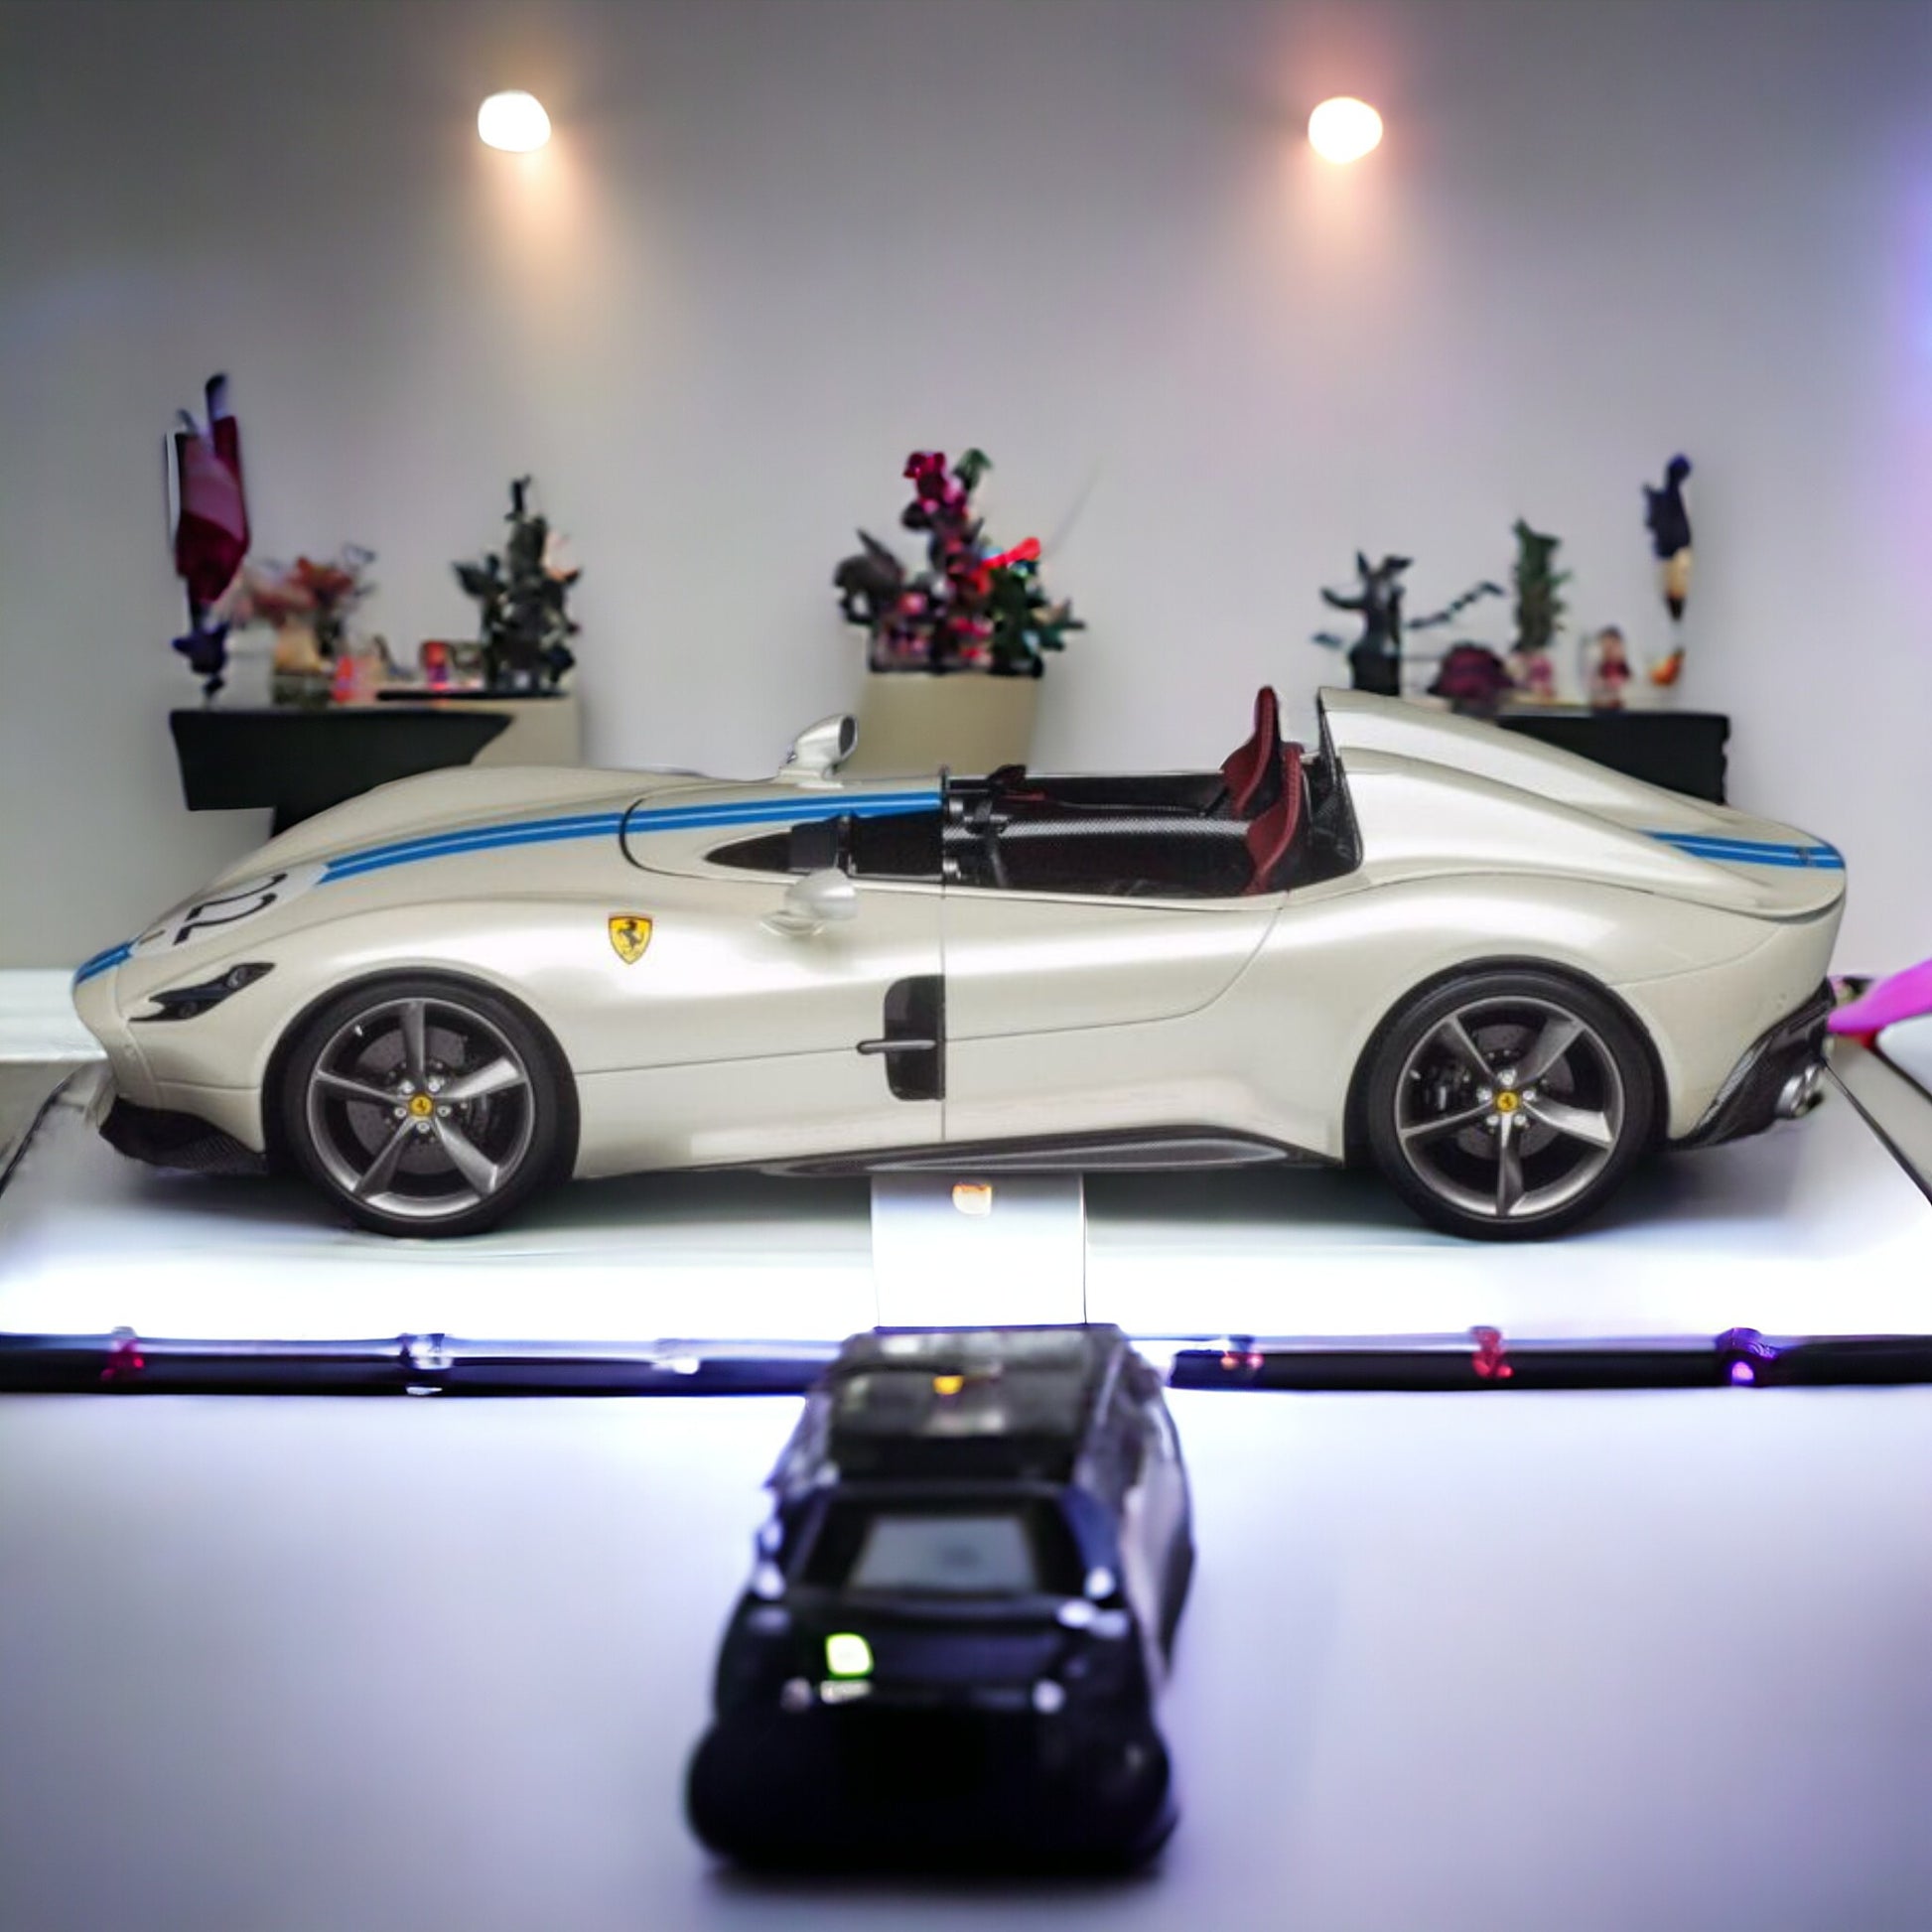 1/18 Diecast Ferrari Monza SP2 White BBR Scale Model Car|Sold in Dturman.com Dubai UAE.